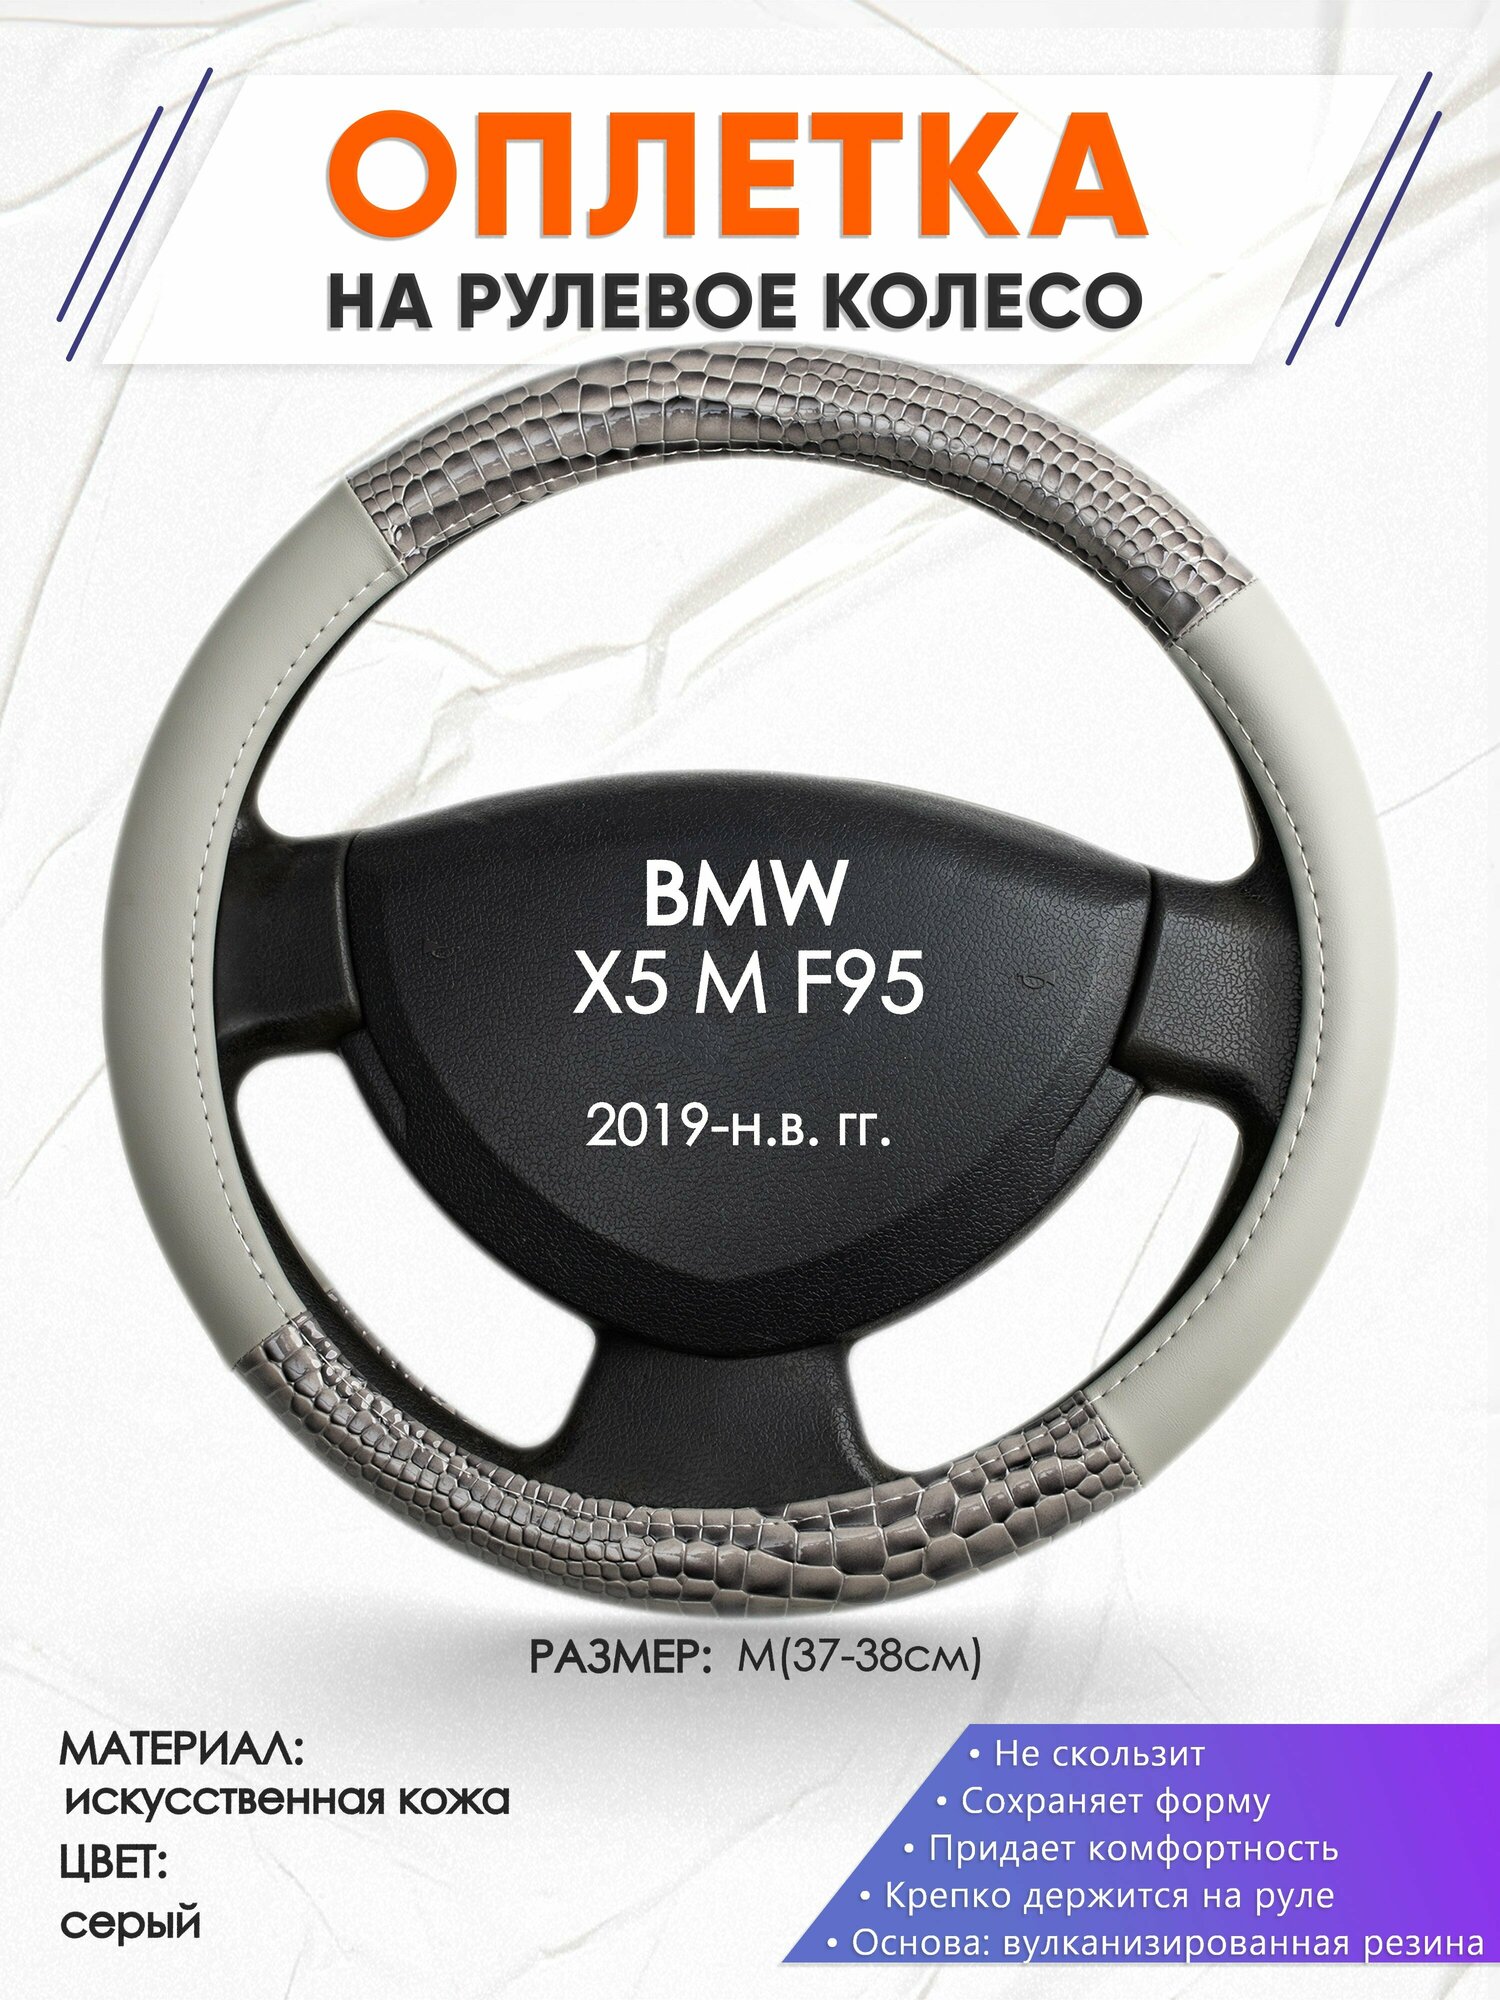 Оплетка наруль для BMW X5 M F95(Бмв икс5) 2019-н. в. годов выпуска, размер M(37-38см), Искусственная кожа 84